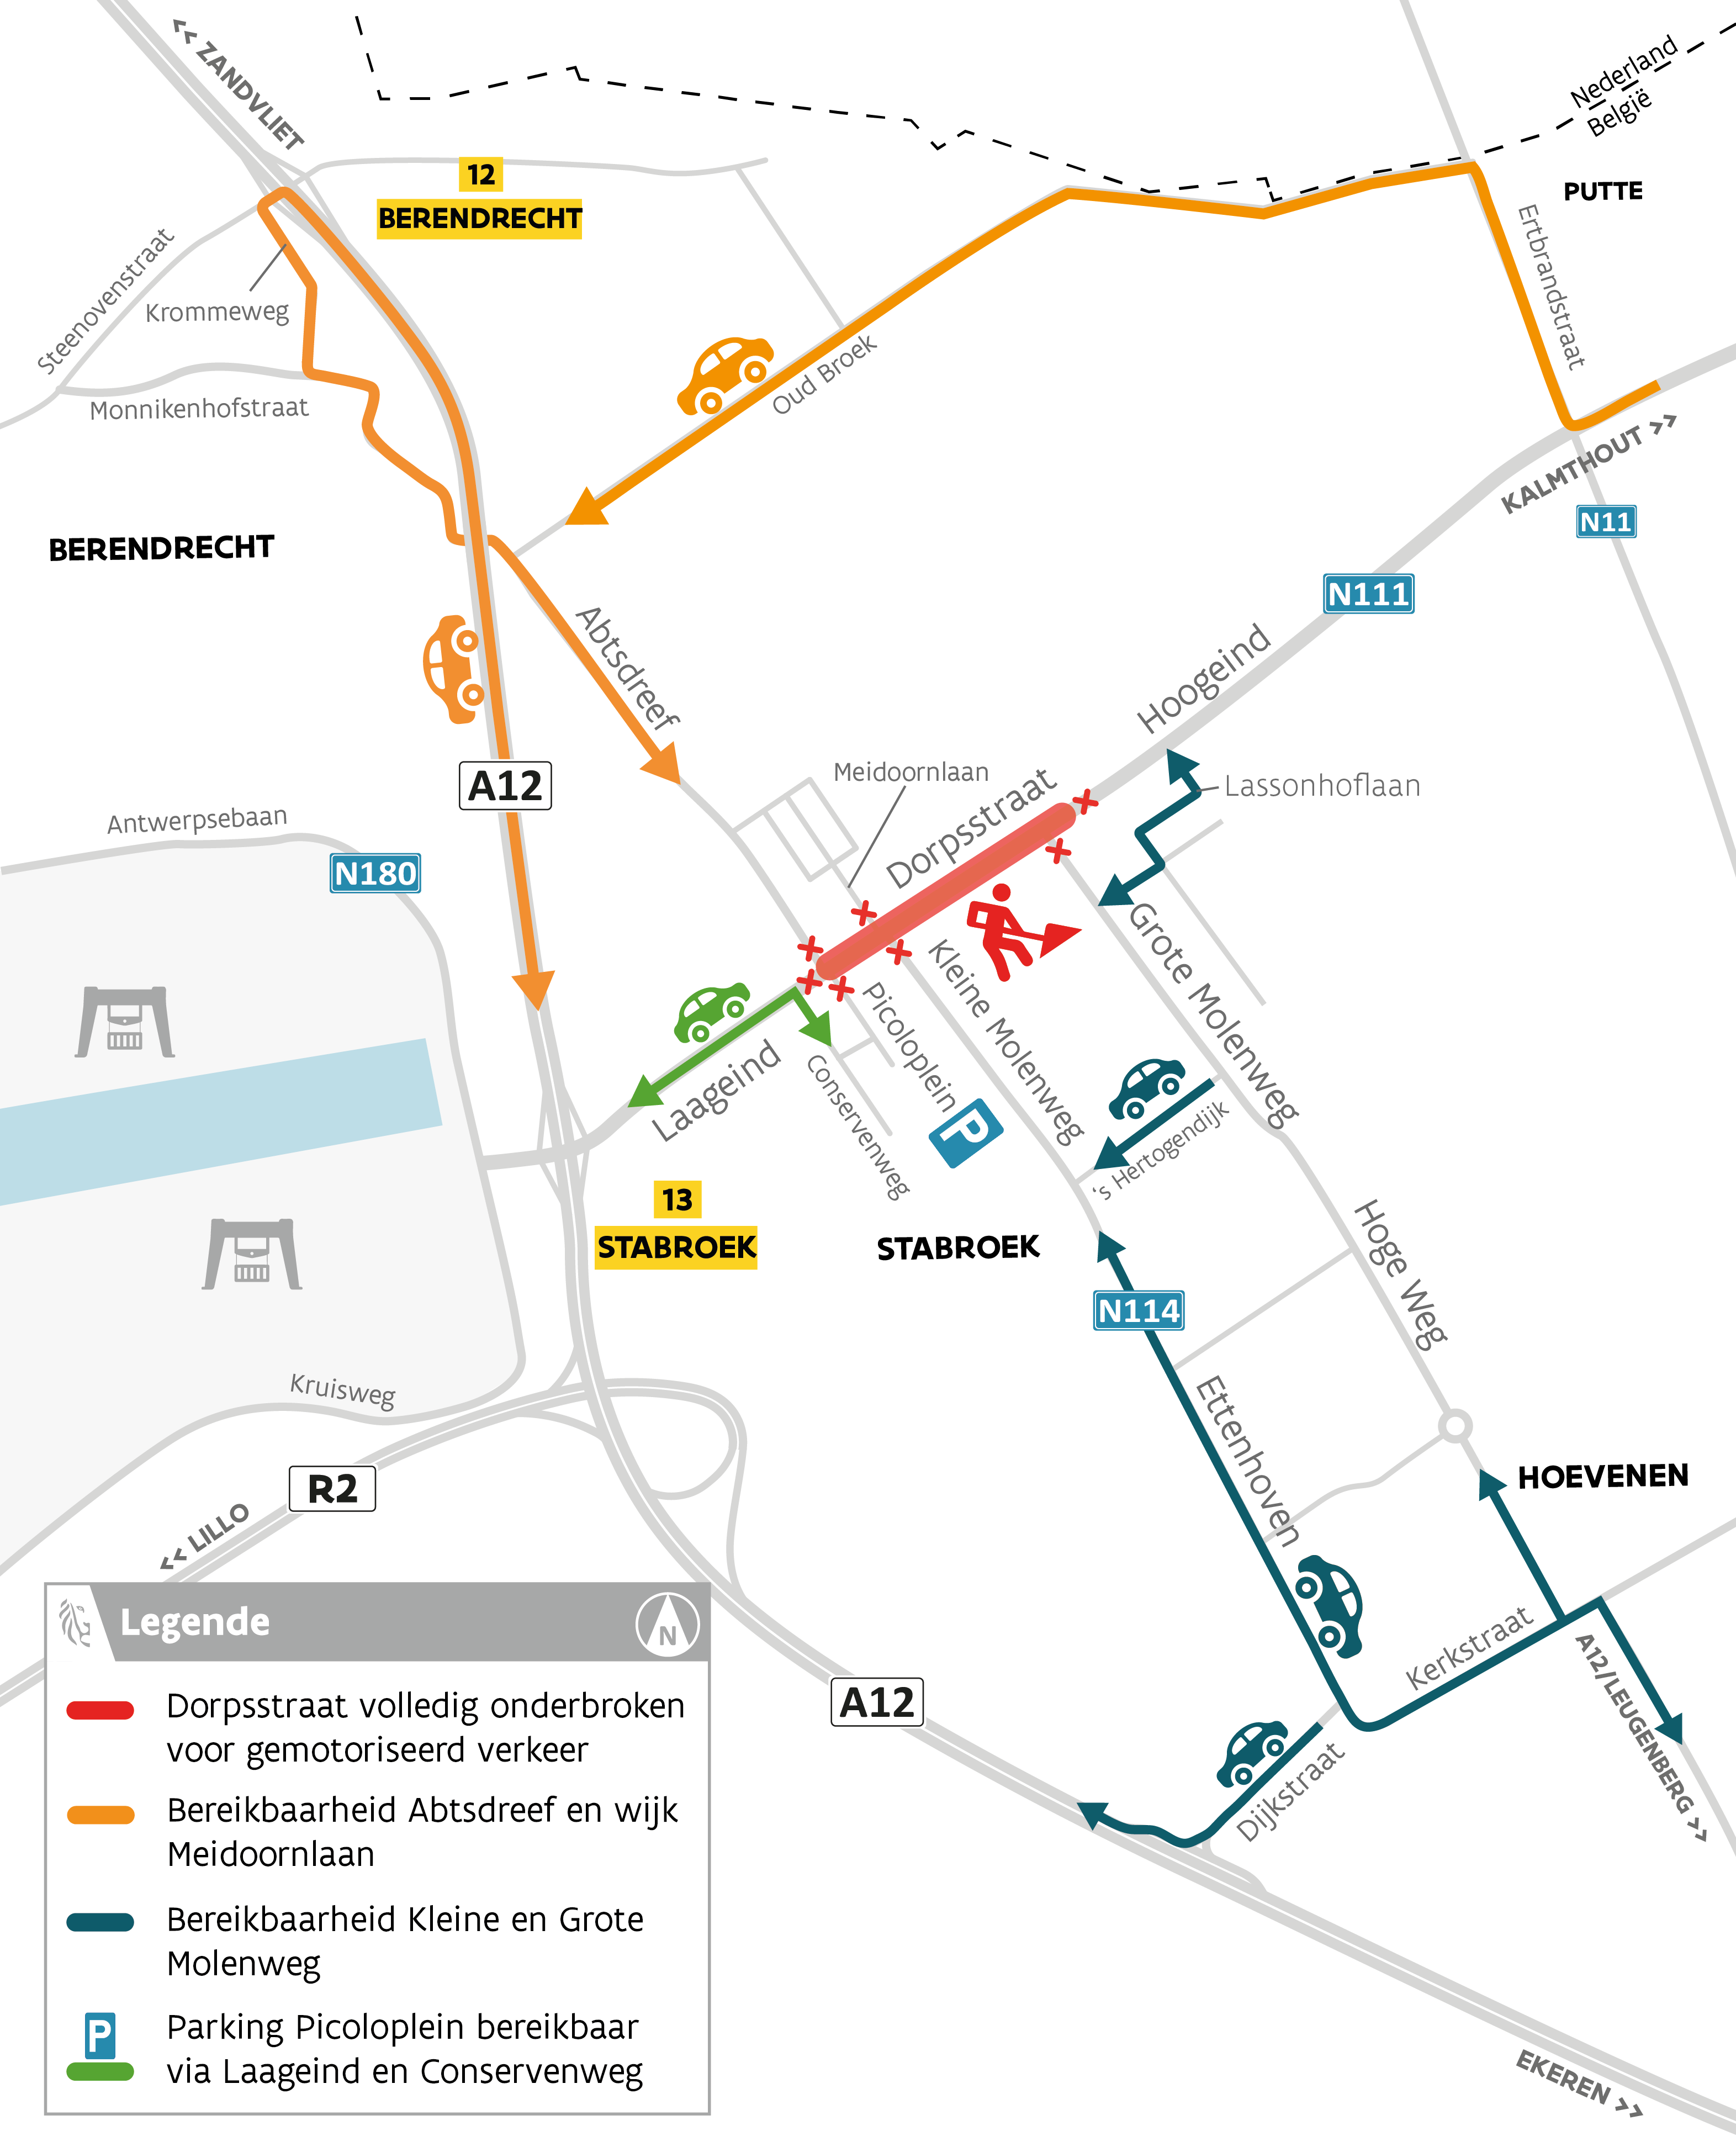 N111 Stabroek routekaart asfaltering Dorpsstraat